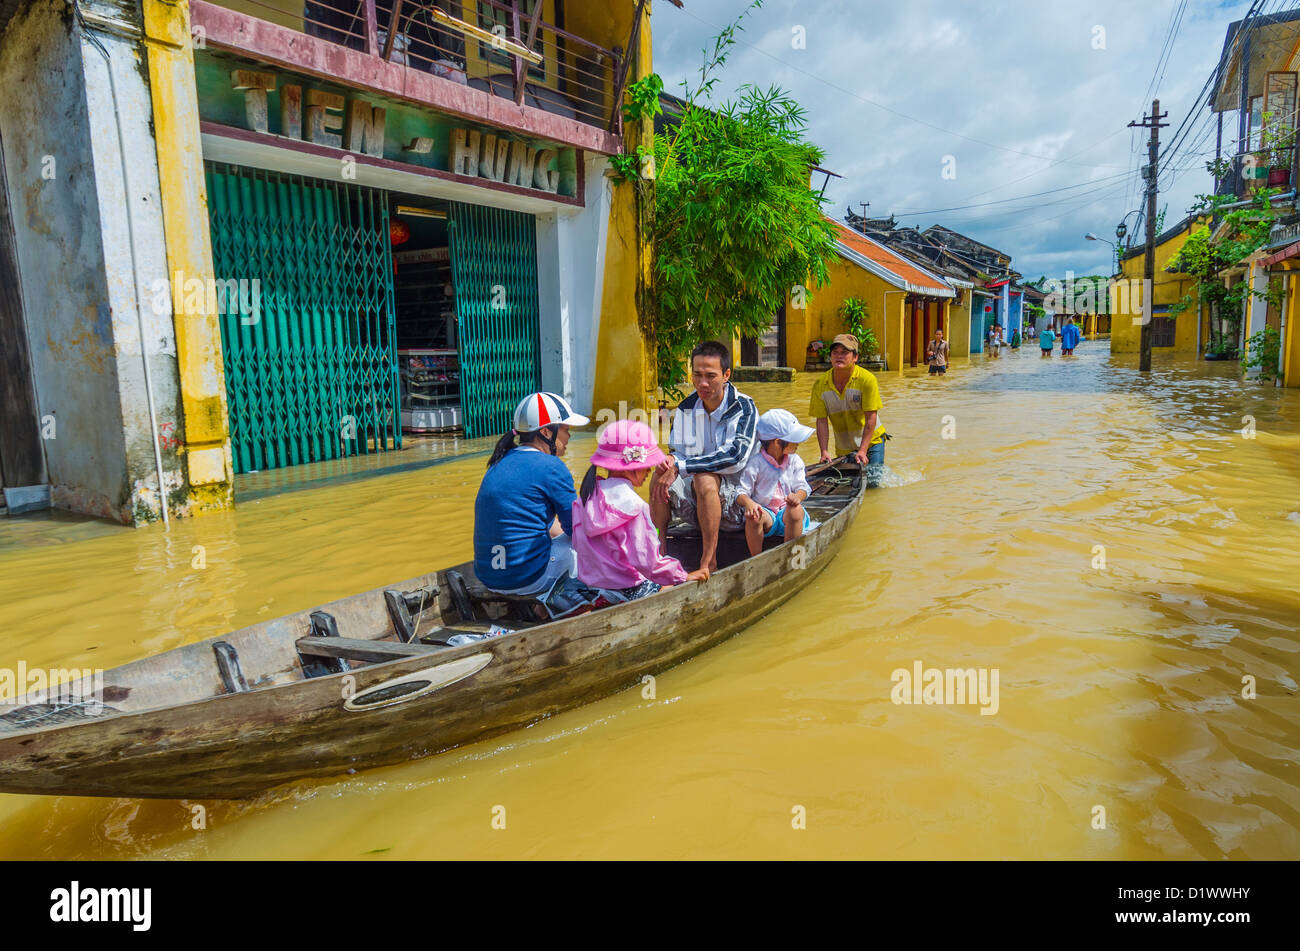 Familia transportados en barco local durante la inundación, Hoi An, Vietnam Foto de stock